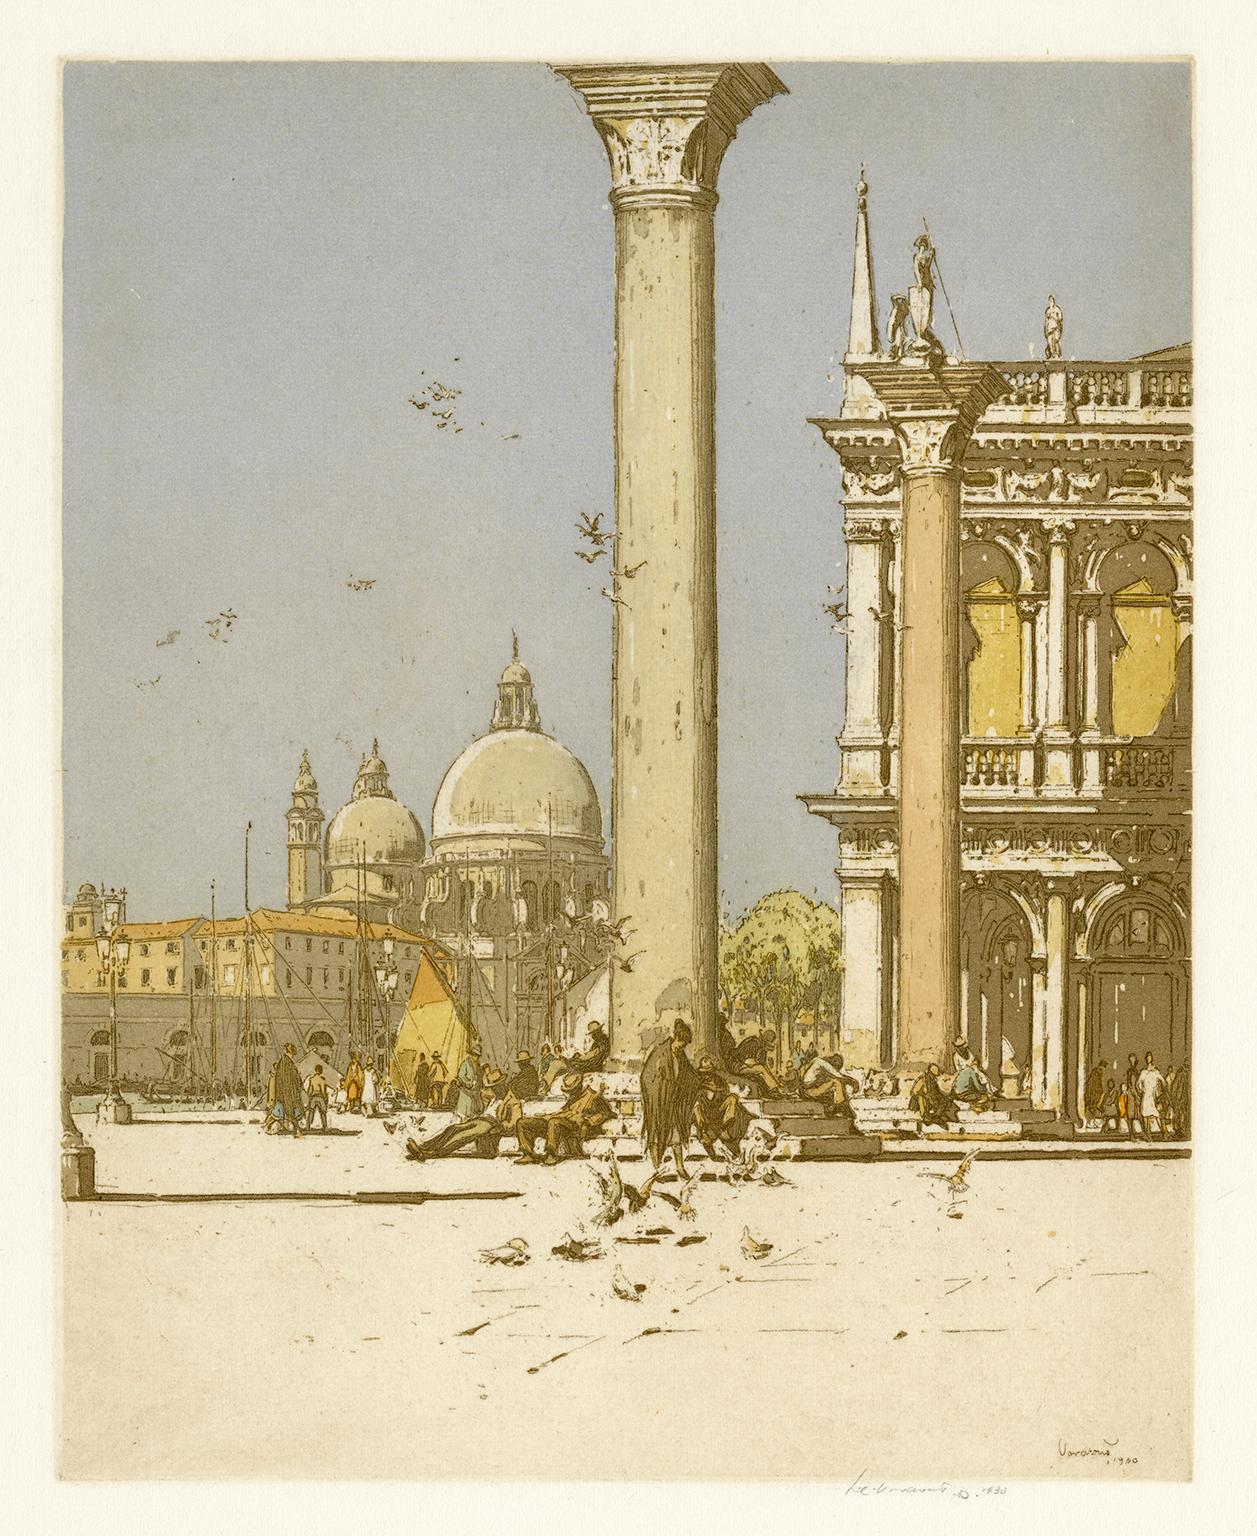 Jan C. Vondrous Landscape Print - Piazzetta, Venice